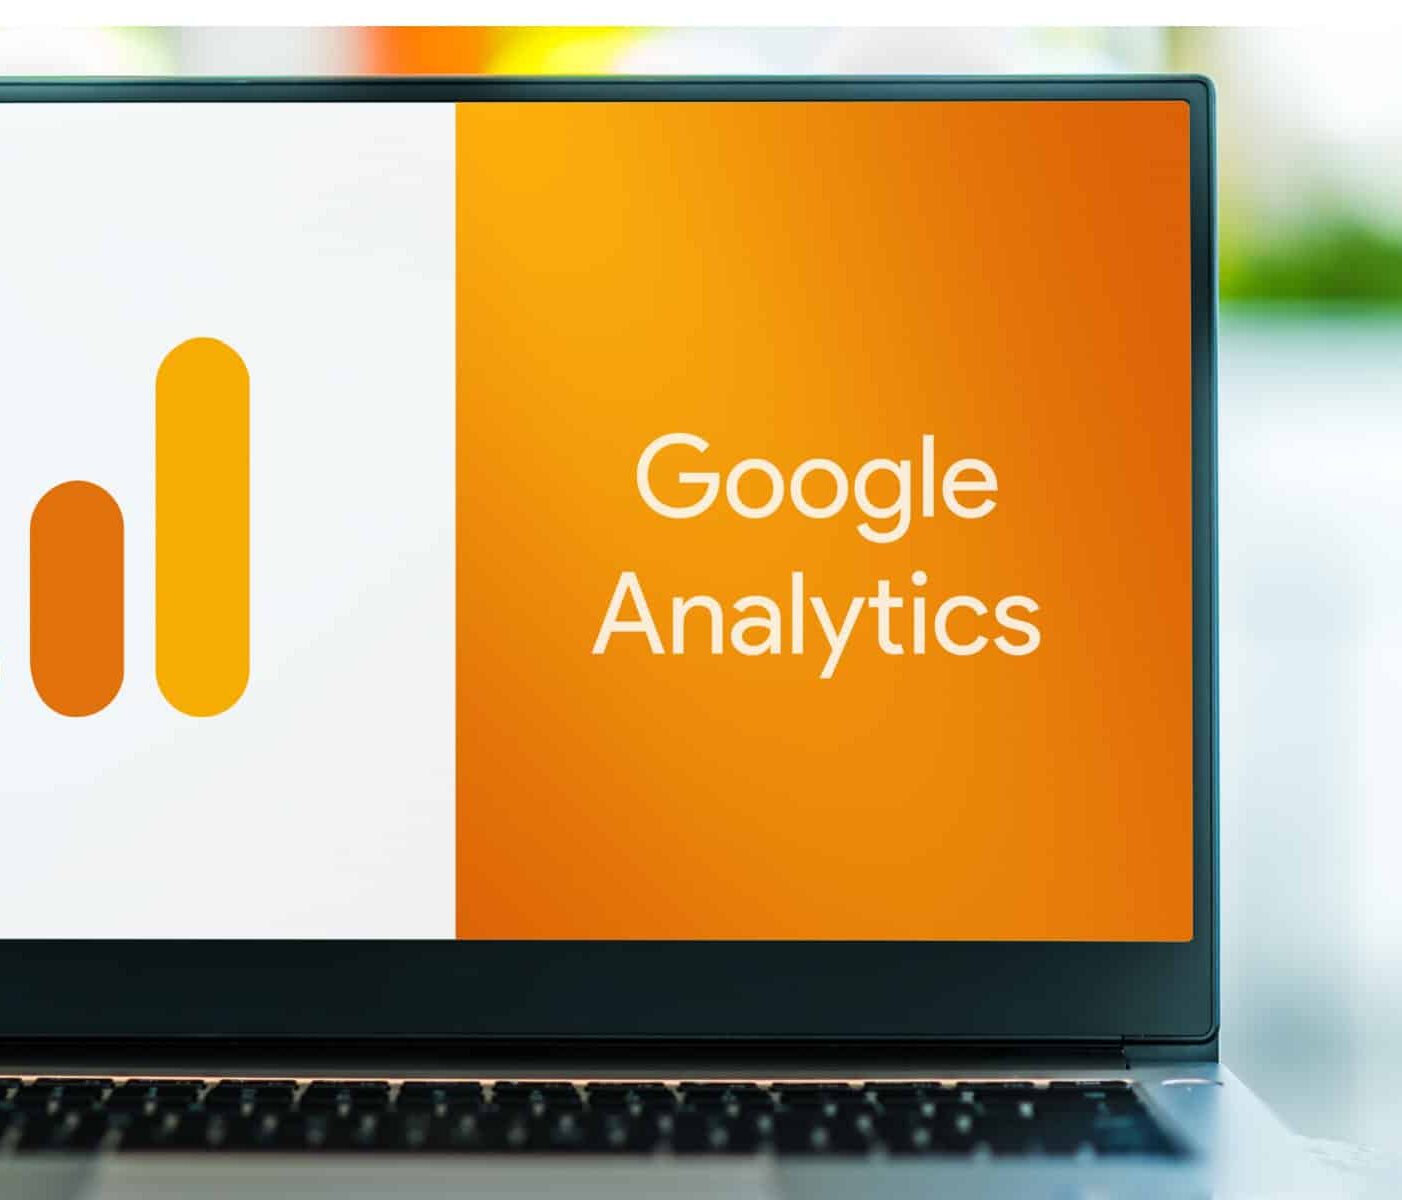 Google Analytics app open on laptop